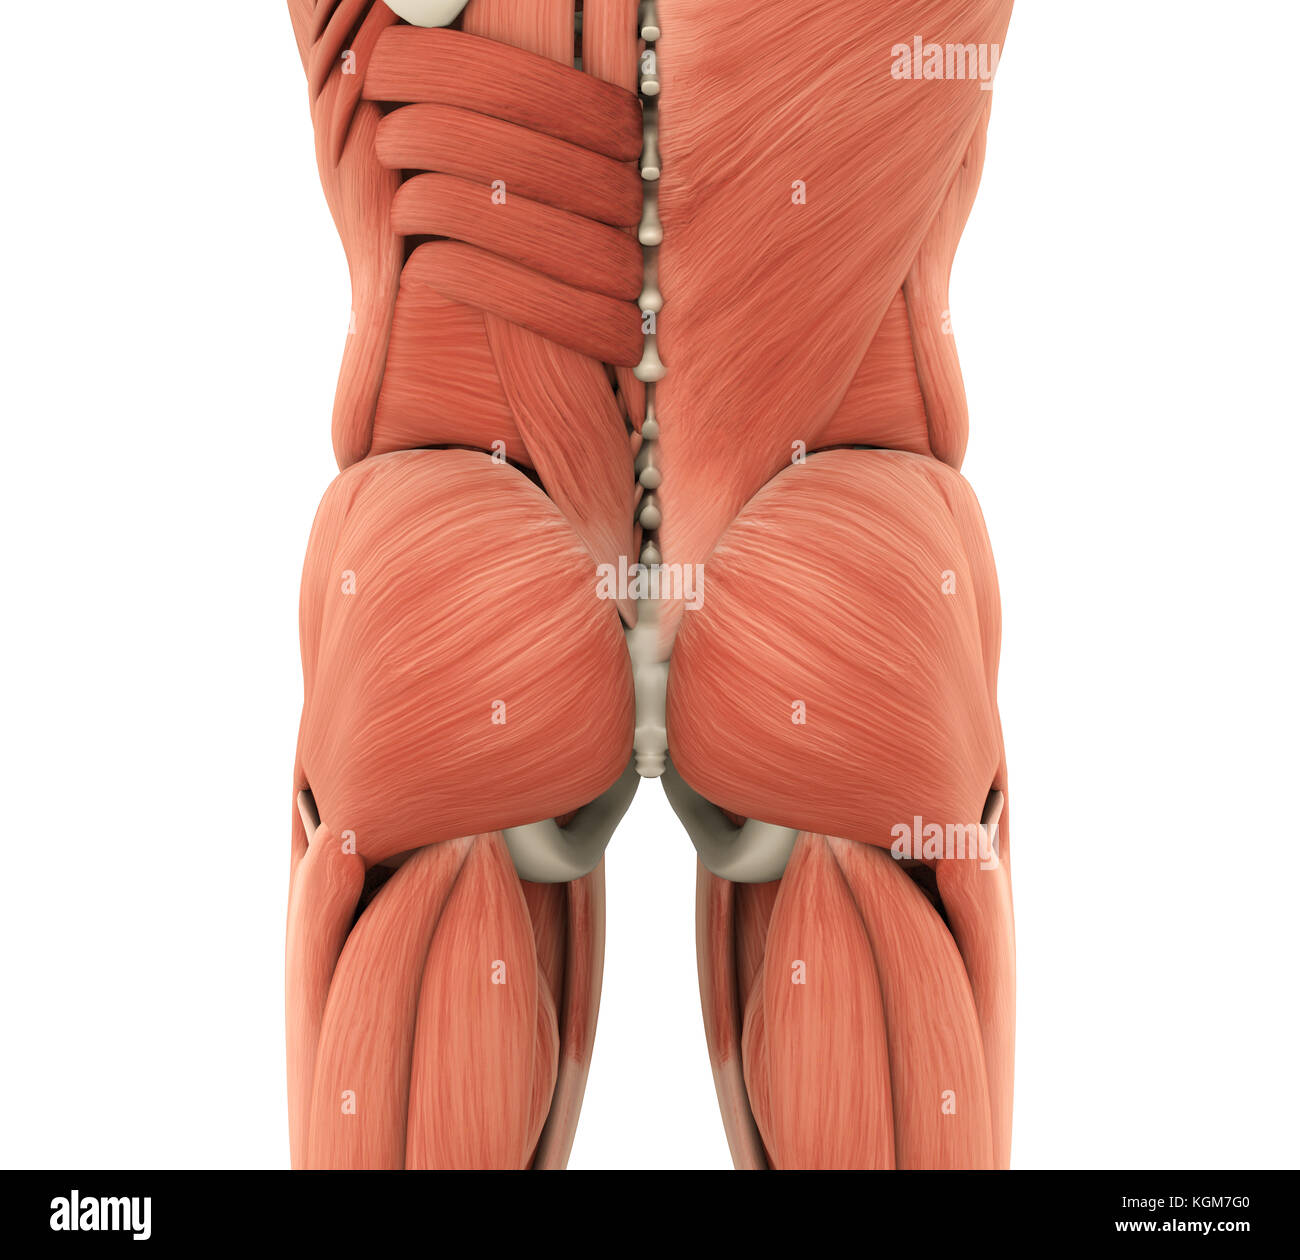 Human muscoli glutei anatomia Foto Stock